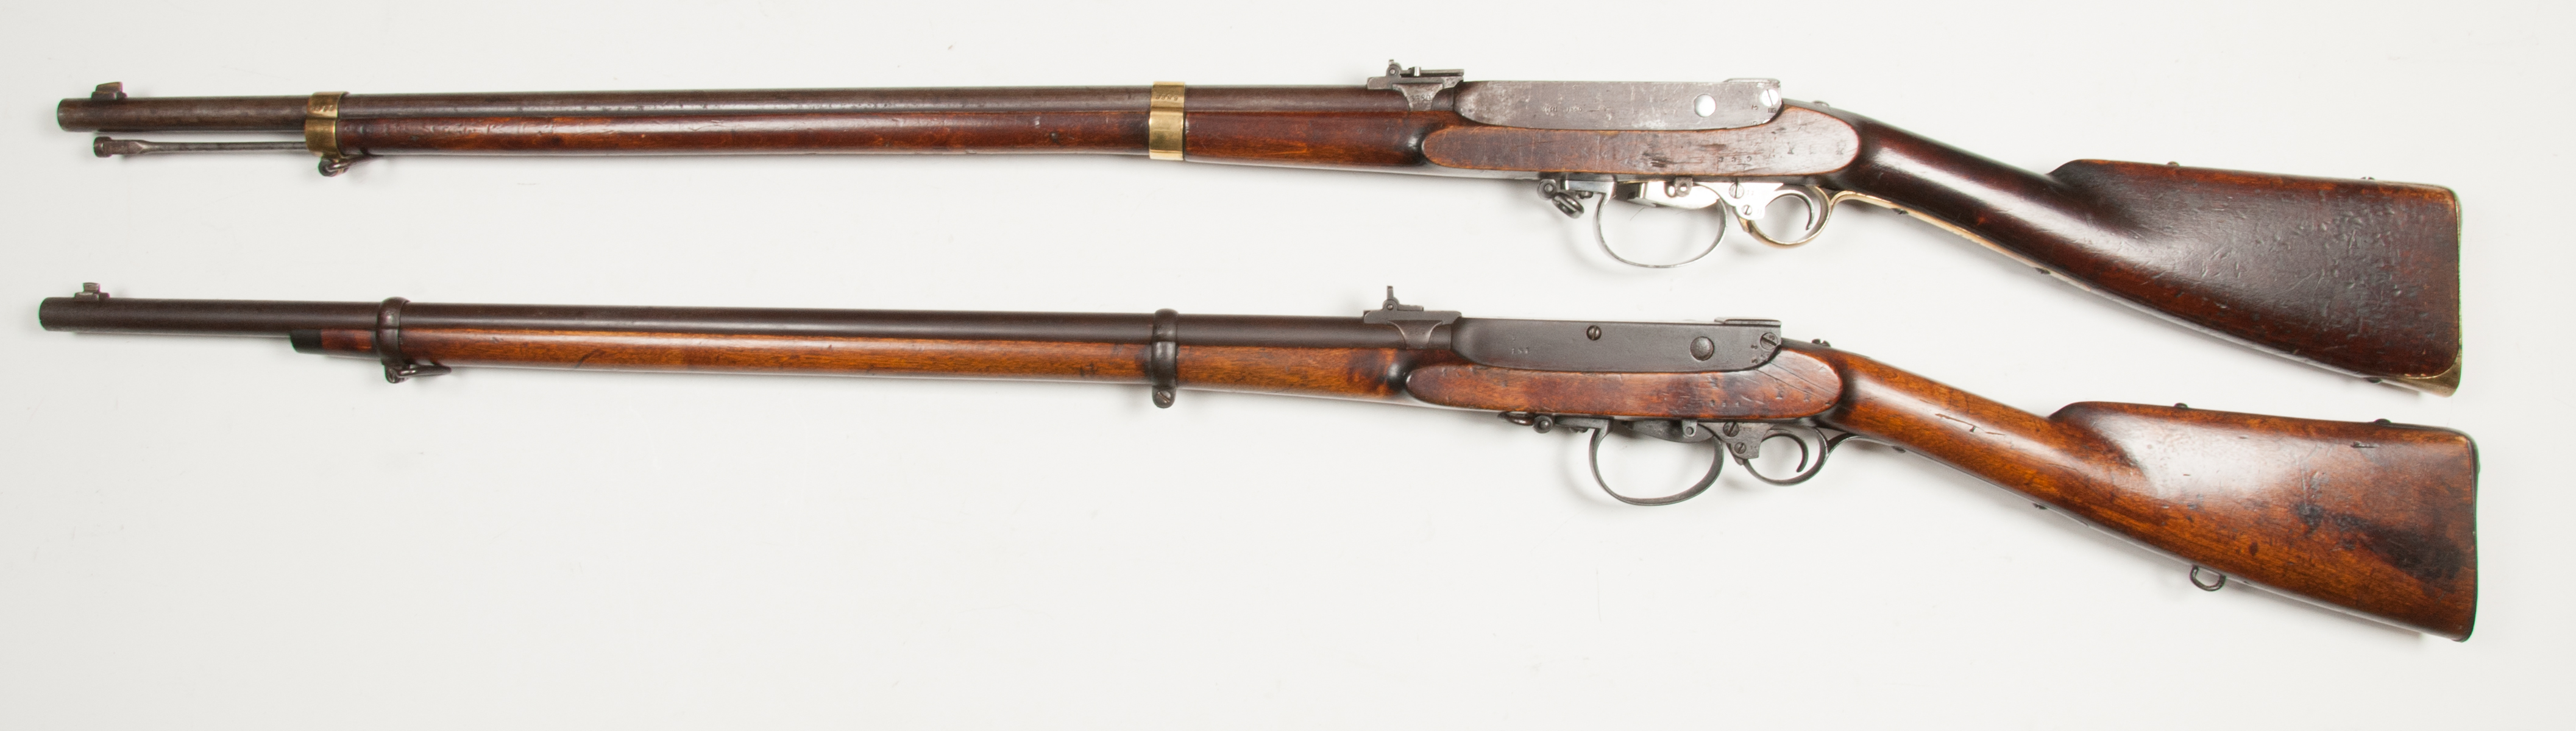 ./guns/rifle/bilder/Rifle-Kongsberg-Kammerlader-M1860-Kort-154-1861-Skytterlag-4.jpg